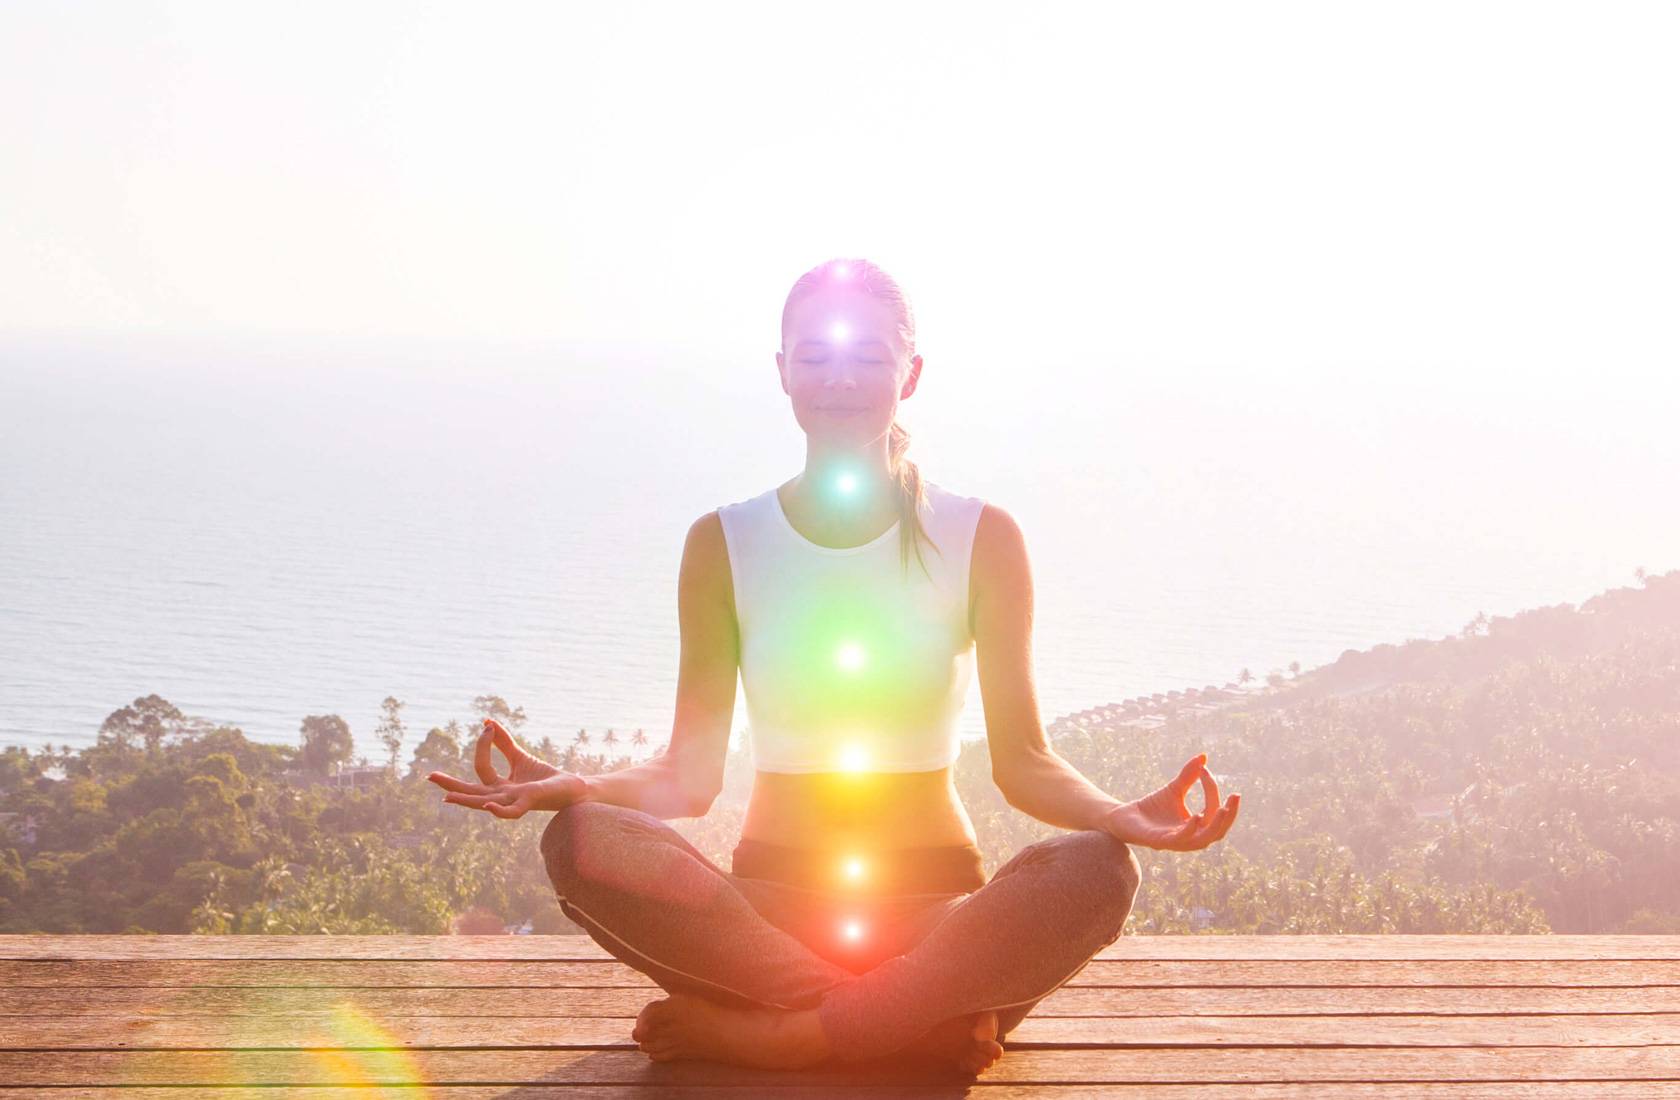 Йога и медитация в современном мире: все о йоге и видах  медитации - cвятослав дубянский  - мастер медитации - эзотерический писатель - художник